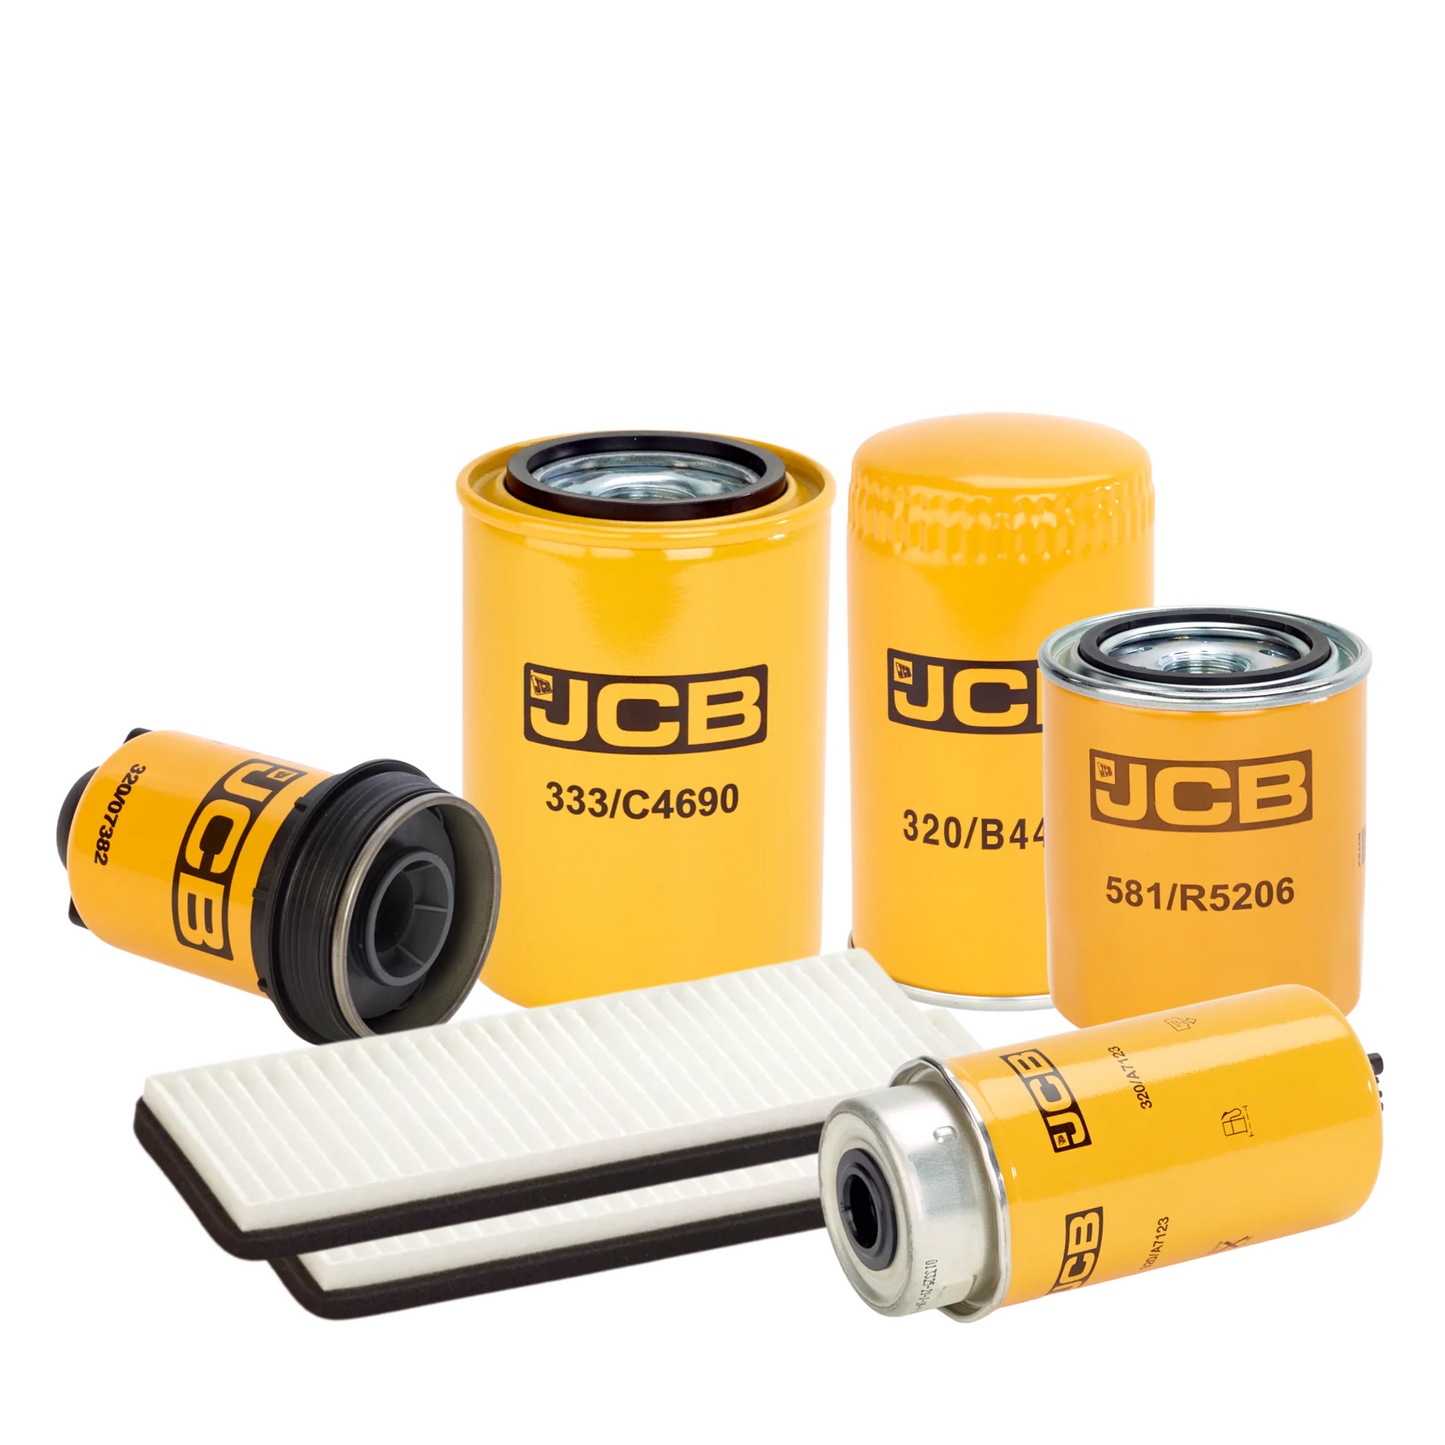 JCB 535-140 2500 Hour Filter Kit